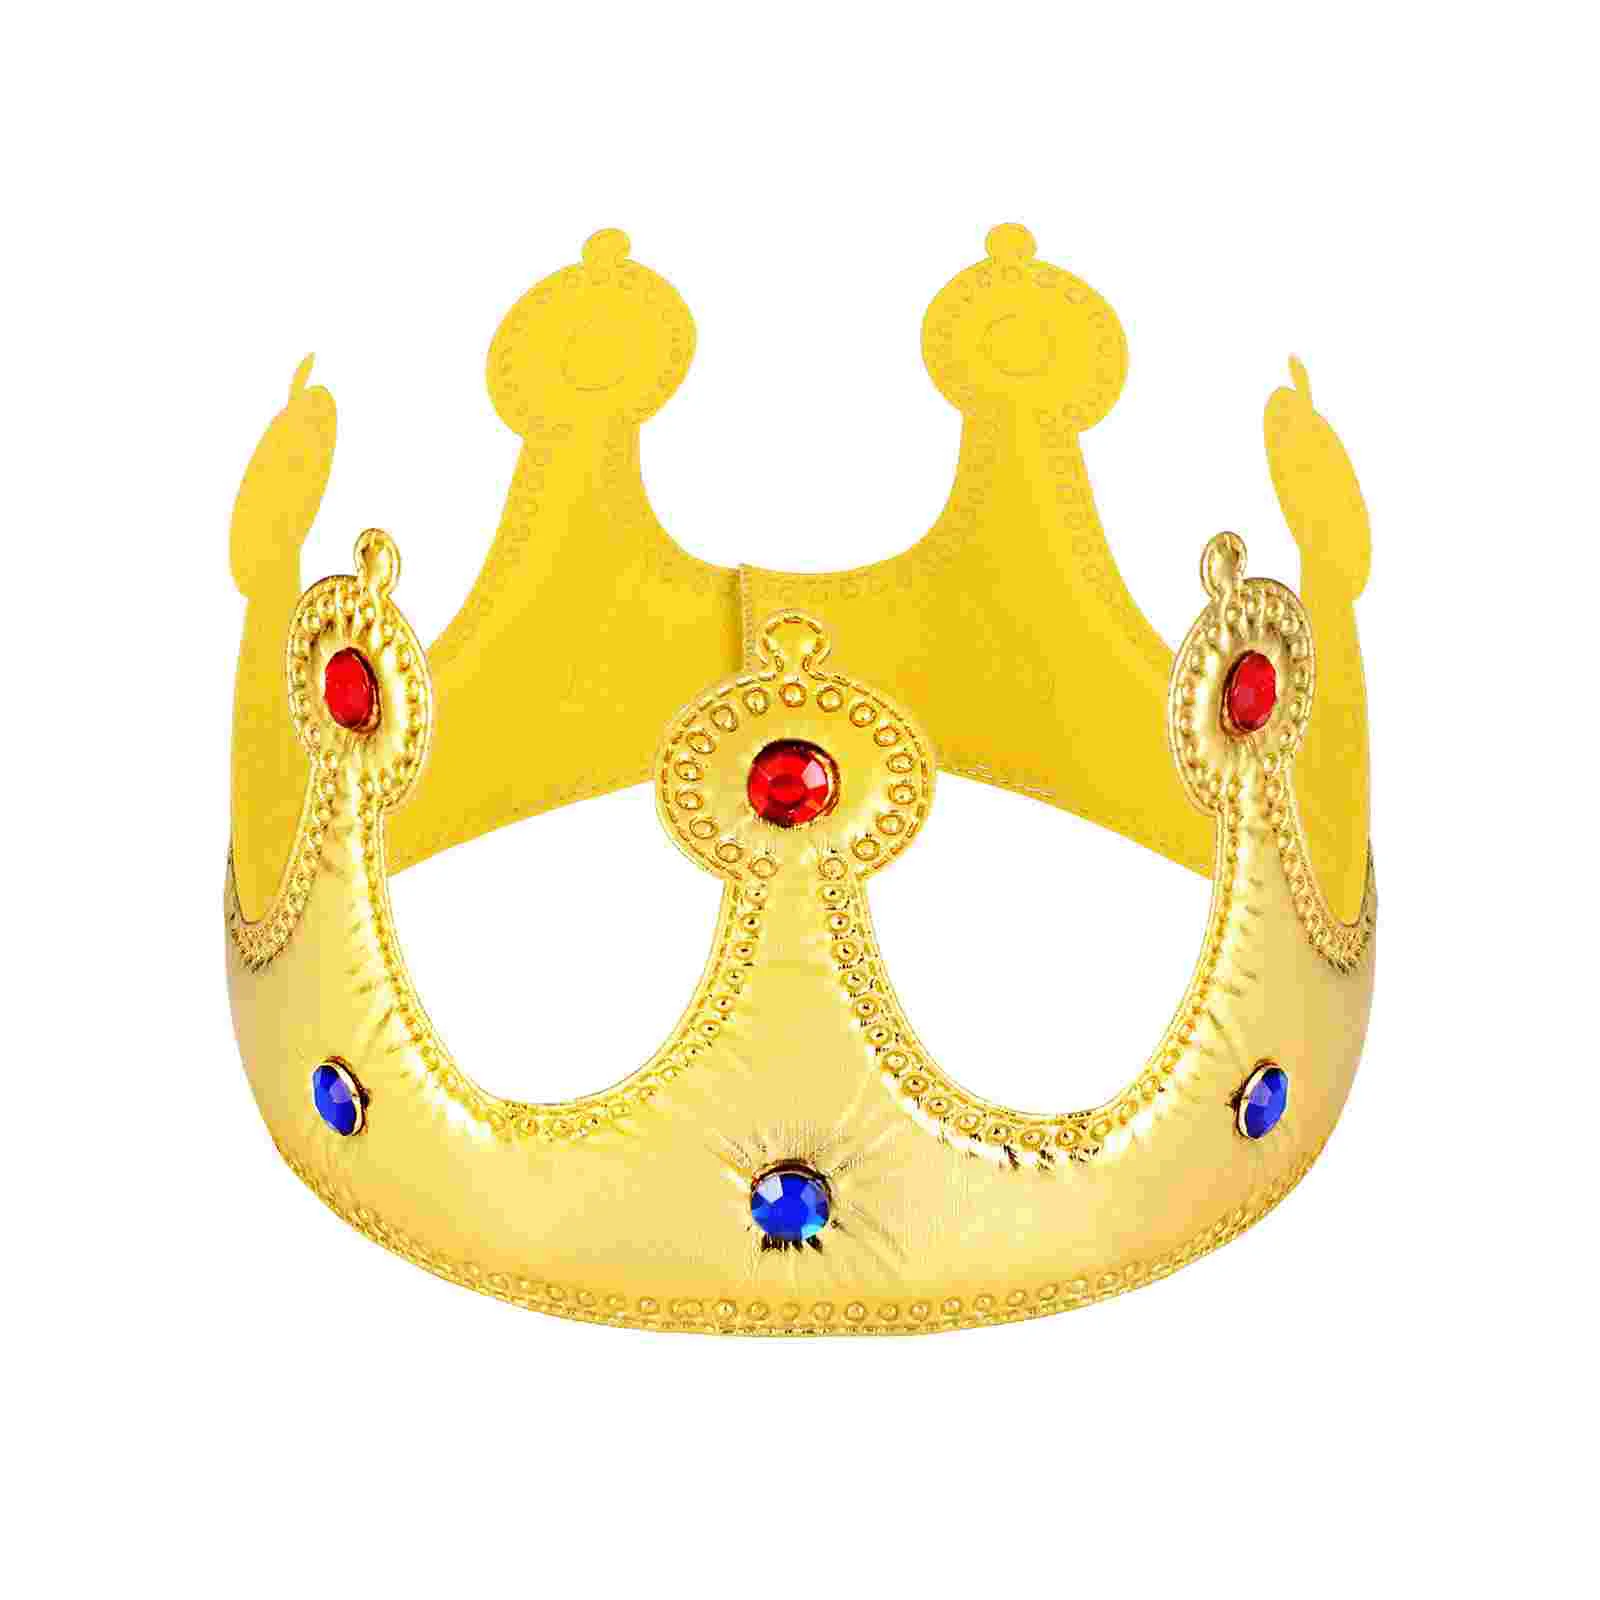 

Корона шляпы золотые короны королевские короны для детей и взрослых подарок на день рождения костюм аксессуары фотореквизит